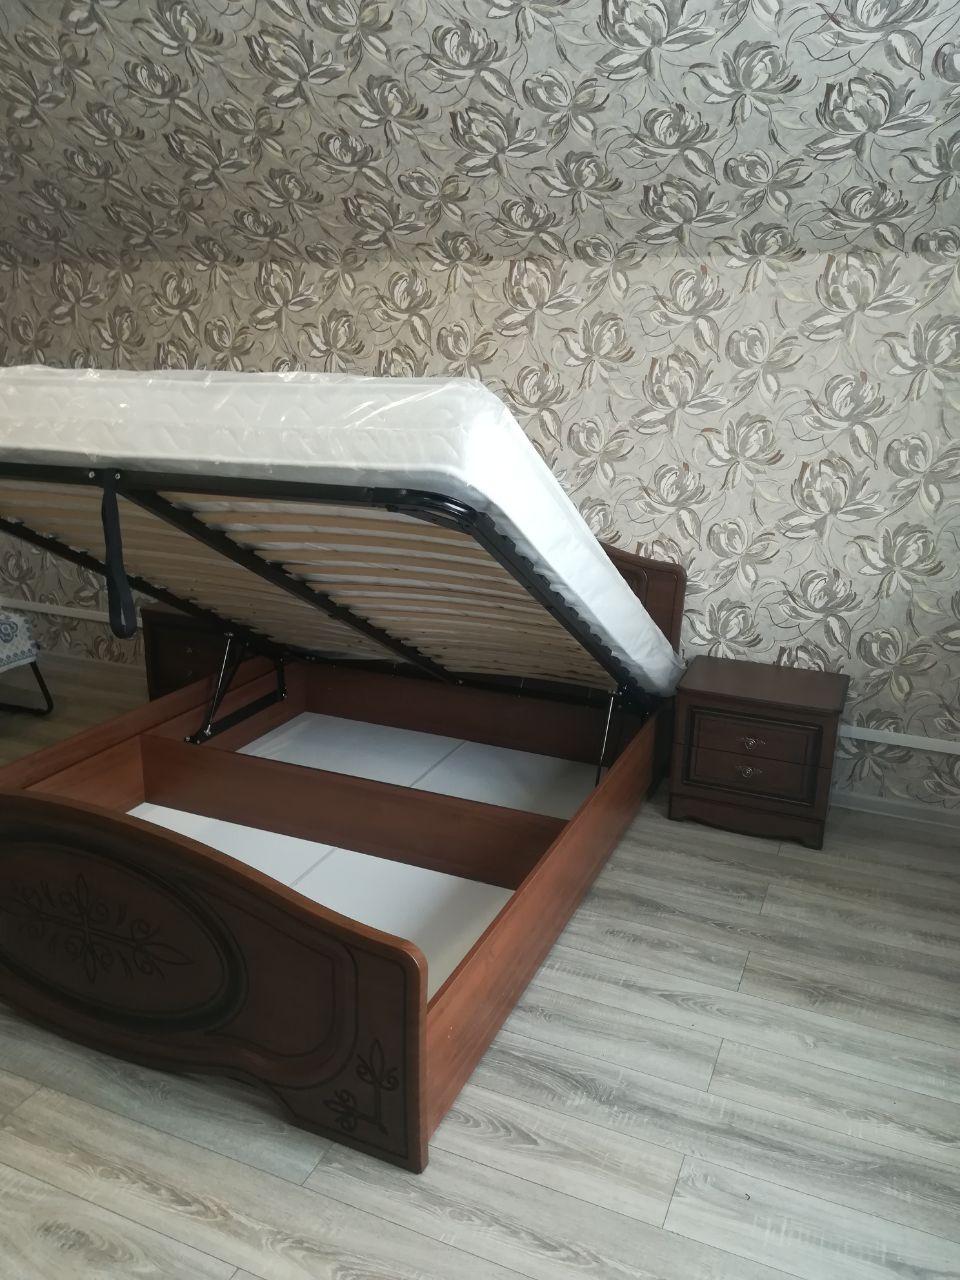 Двуспальная кровать "Натали" 160х200 с подъемным механизмом цвет клен/ясень бежевый изножье низкое